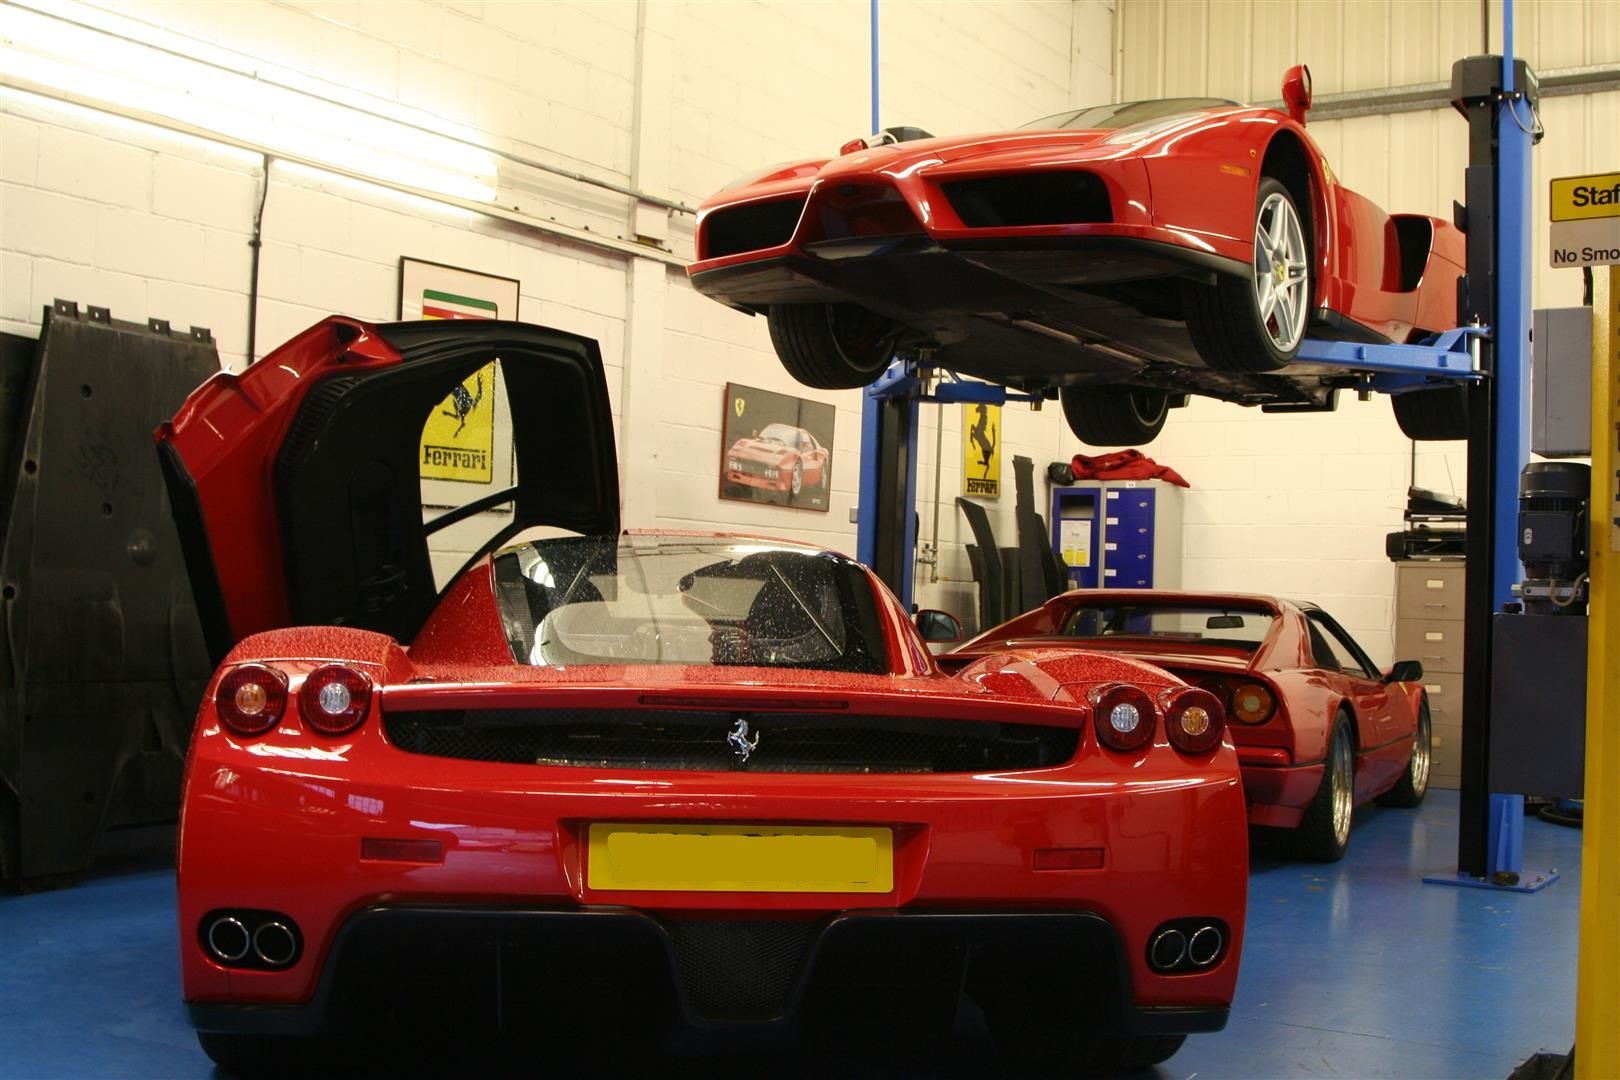 Two Ferrari Enzos in our workshop